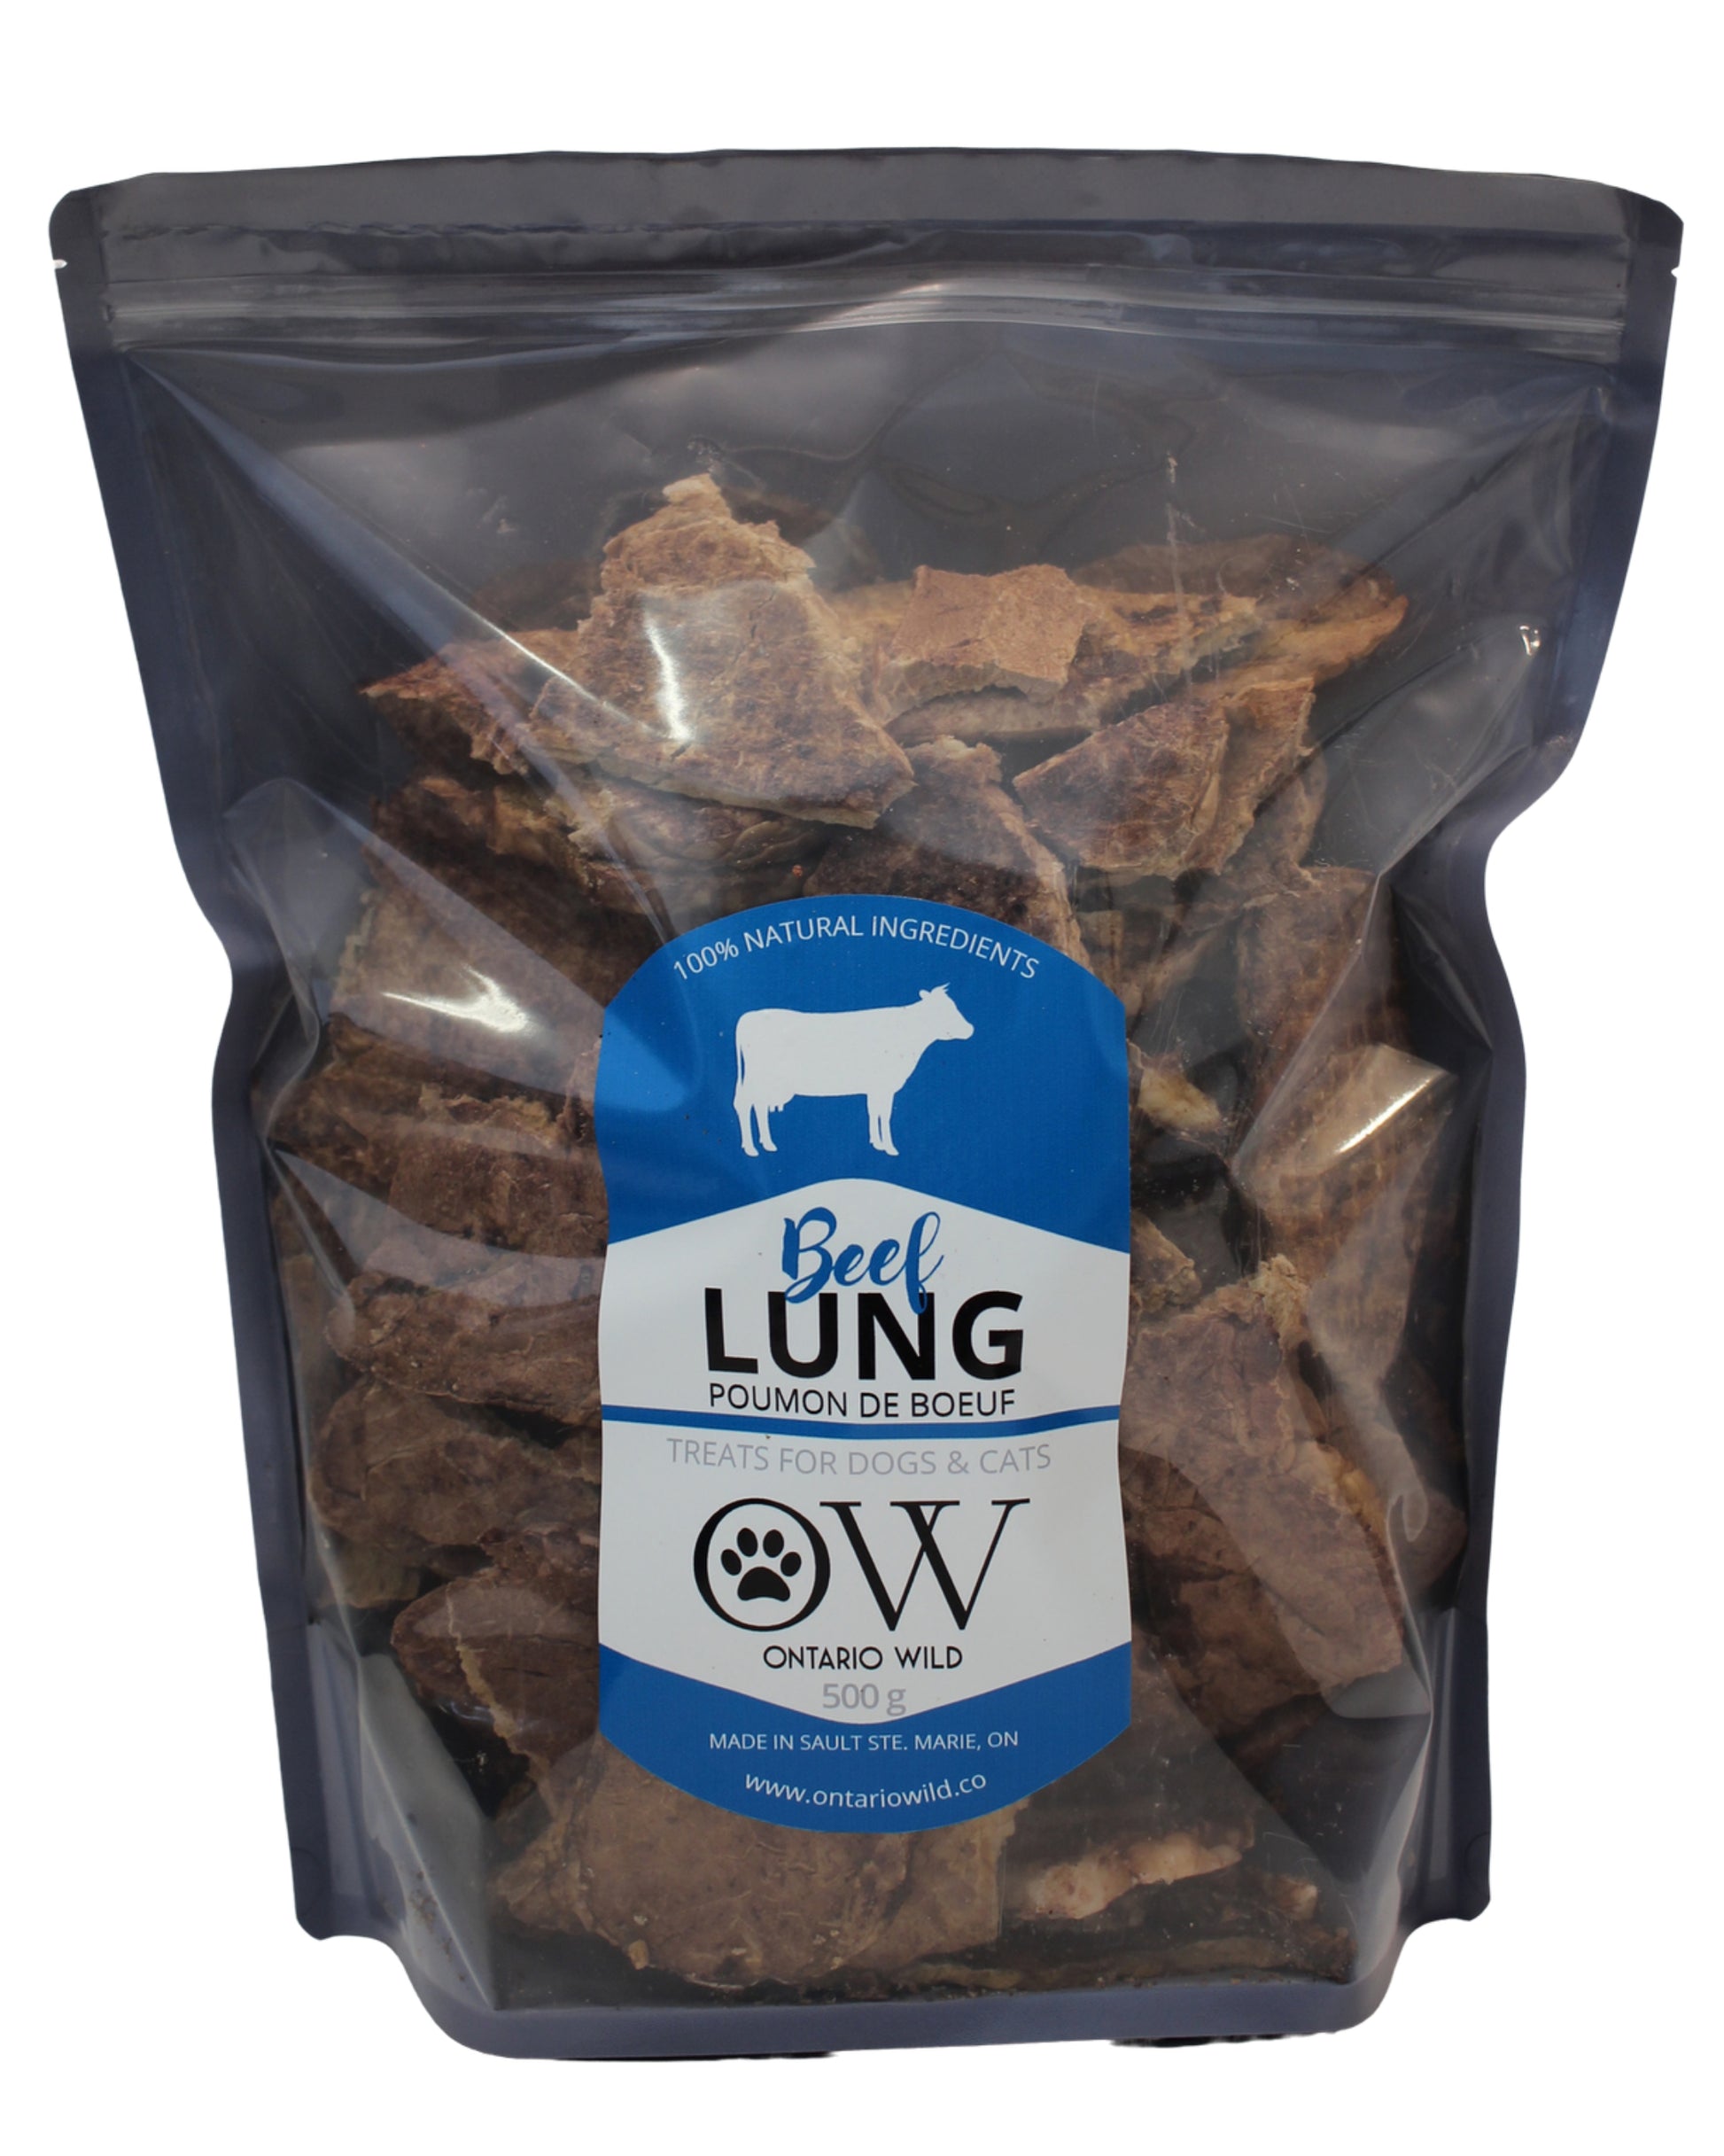 Beef Lung - 500 g - Ontario Wild Pet Shop